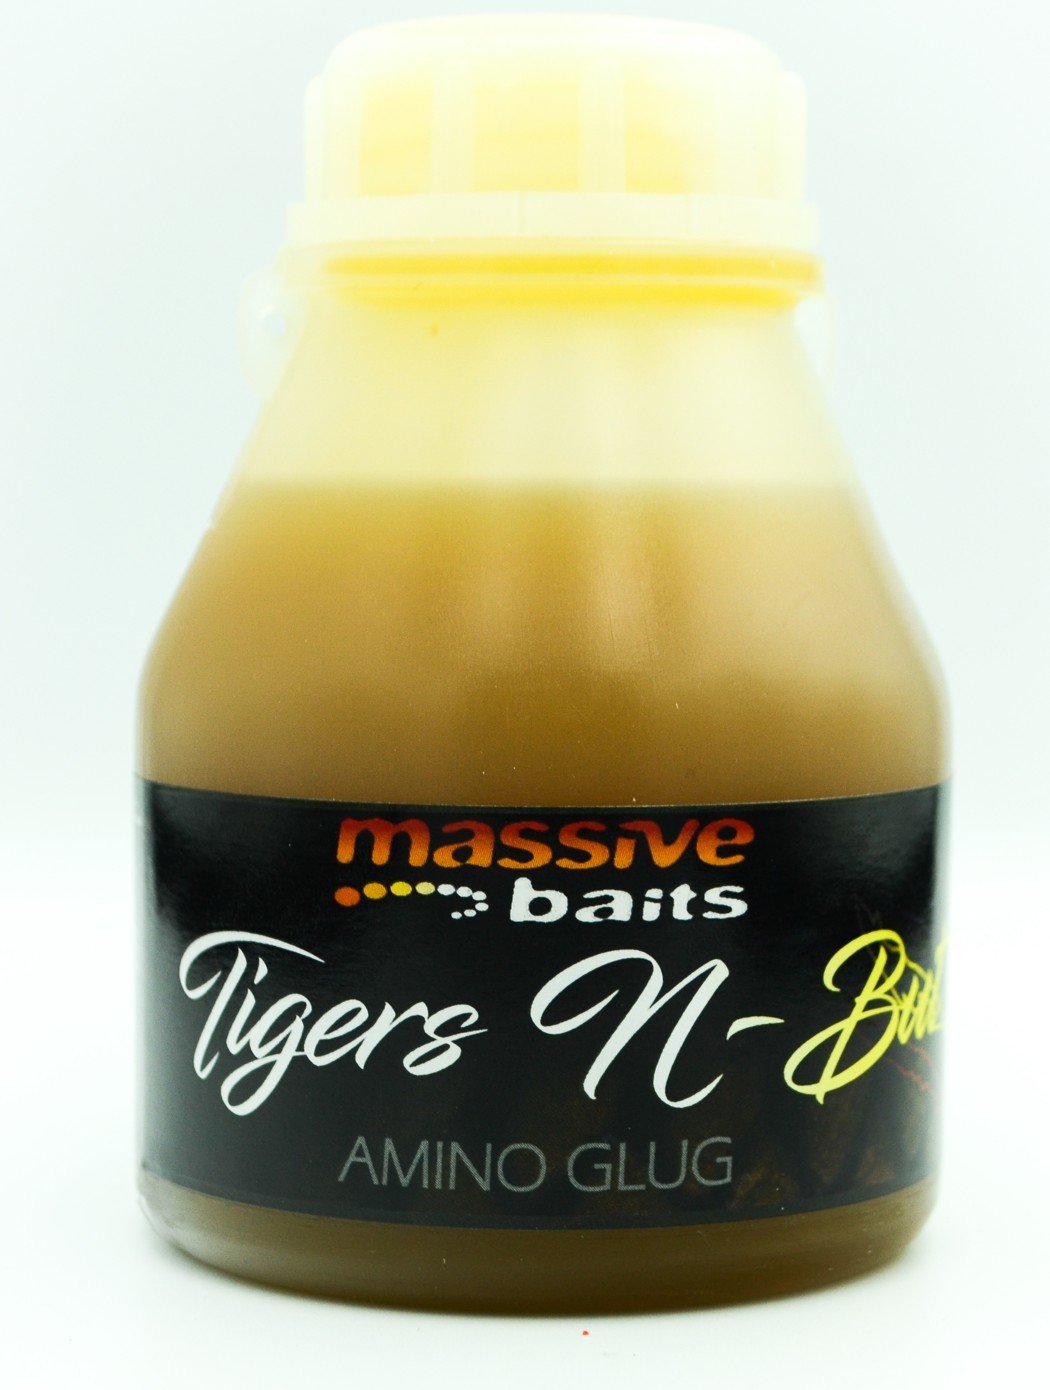 Massive Baits – Tigers N-But – Amino GLUG